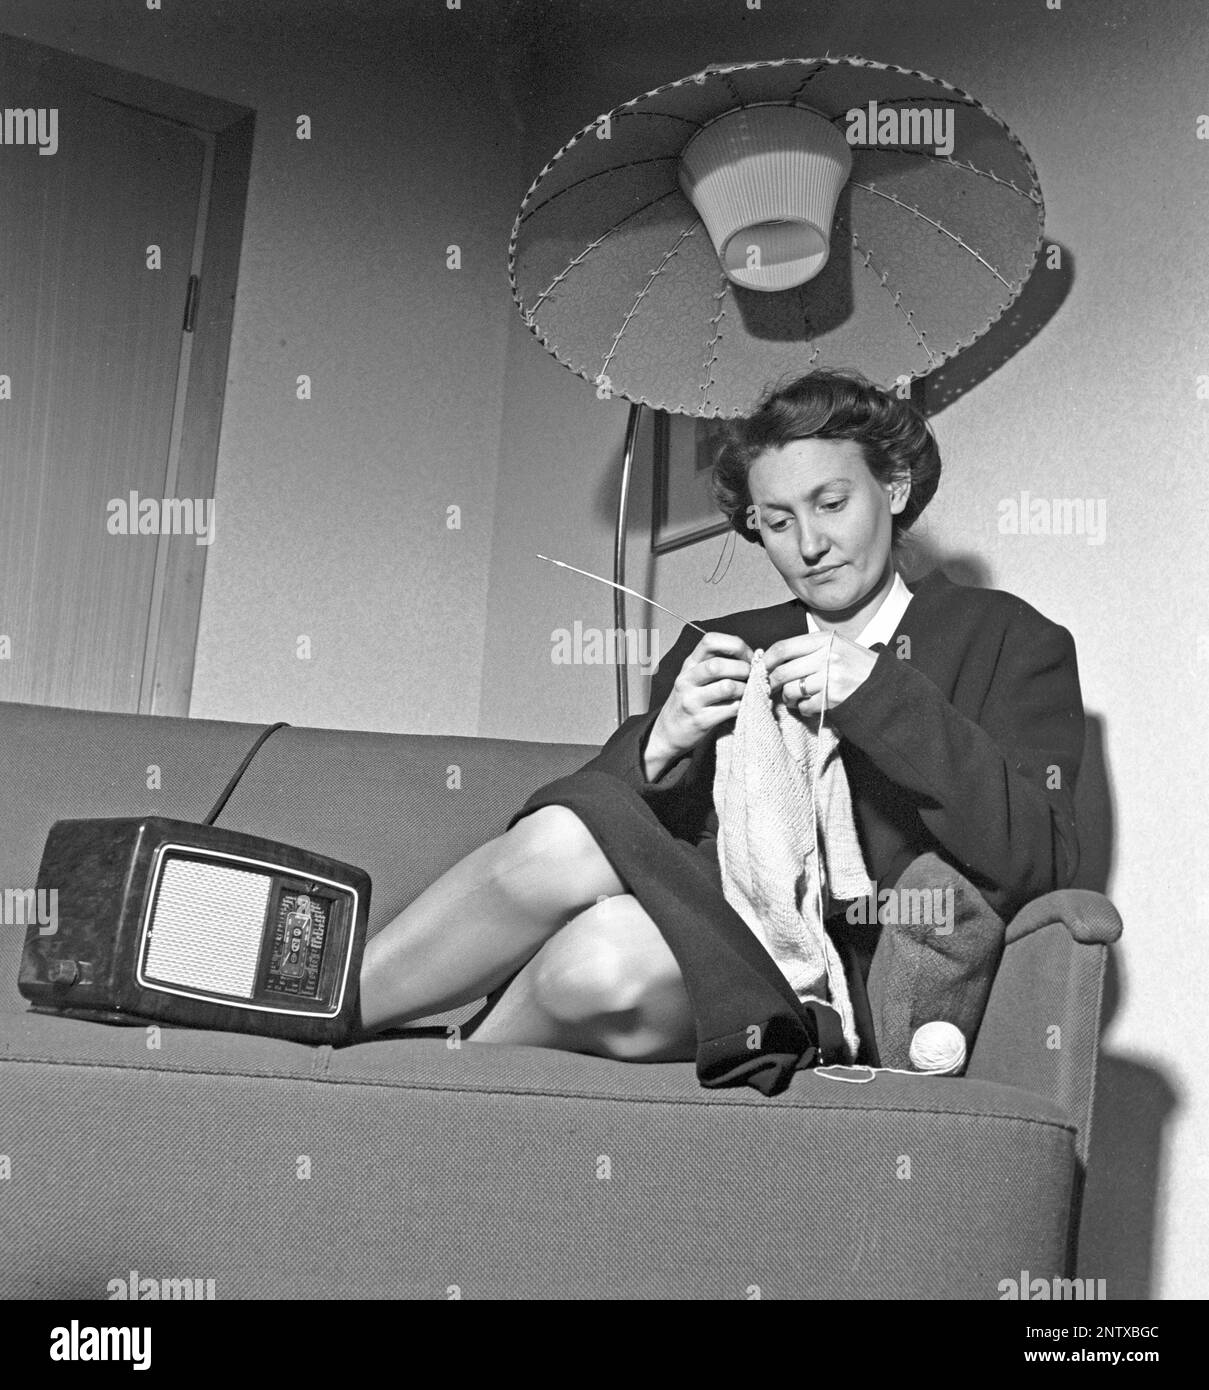 Radio-Hörer in der Vergangenheit. Eine Frau sitzt auf einer Couch und strickt mit einem Radio an der Seite. Auf der Vorderseite des Radios befindet sich eine Waage, und als Sie das Wahlrad daneben gedreht haben, sodass sich der Zeiger in der Mitte eines Sendernamens befand, war dieser Sender dort. Neben UKW-Übertragungen hörten sie auch ausländisches Radio auf Langwellen. Schweden 1945 Kristofferson Ref. L179-3 Stockfoto